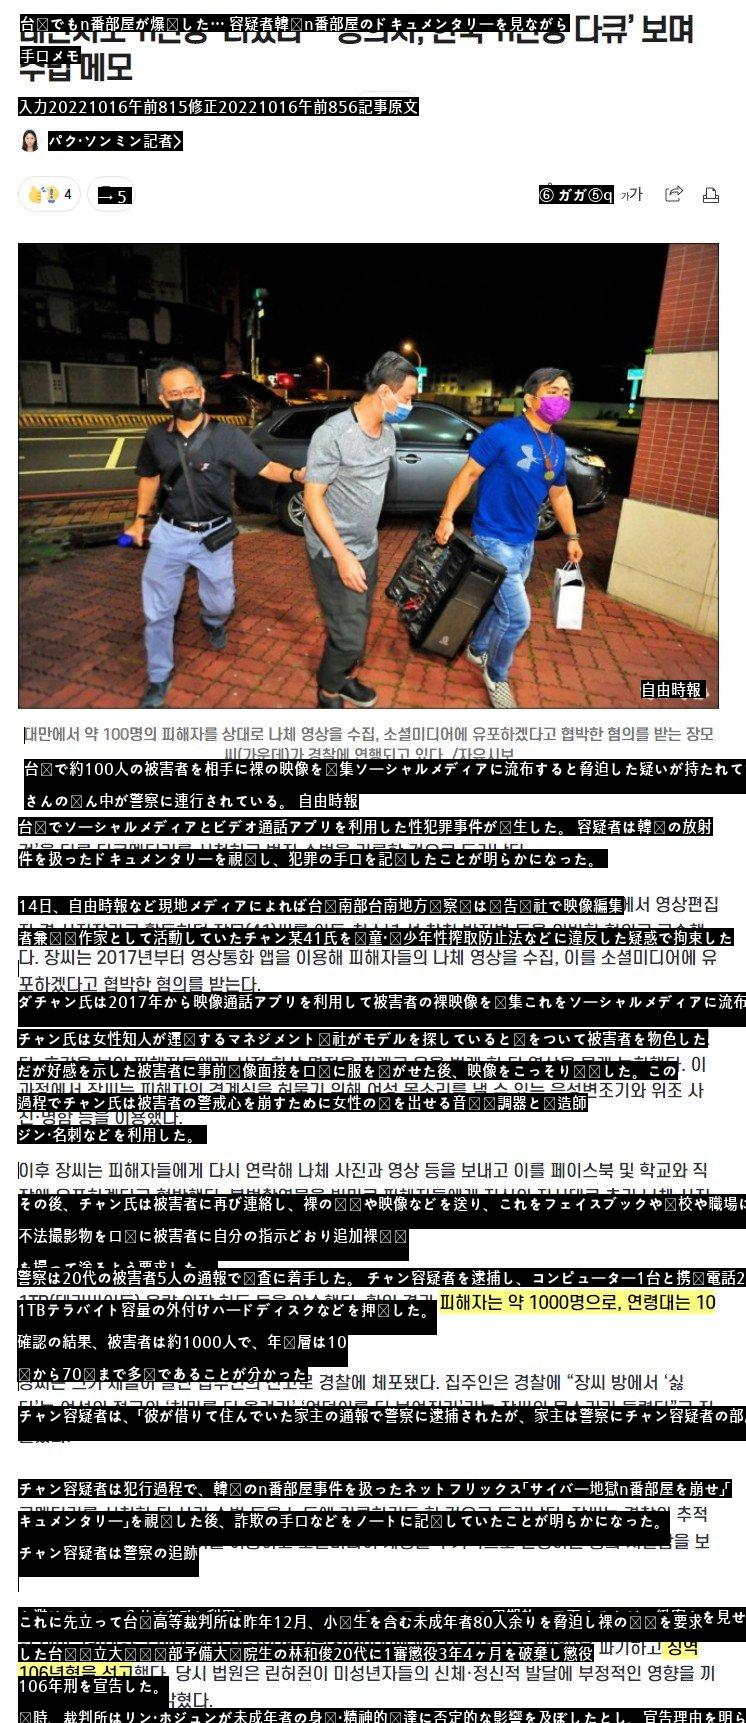 台湾でも「n番部屋」が爆発した… 「容疑者、韓国n番部屋ドキュメンタリー」を見ながら手口メモ